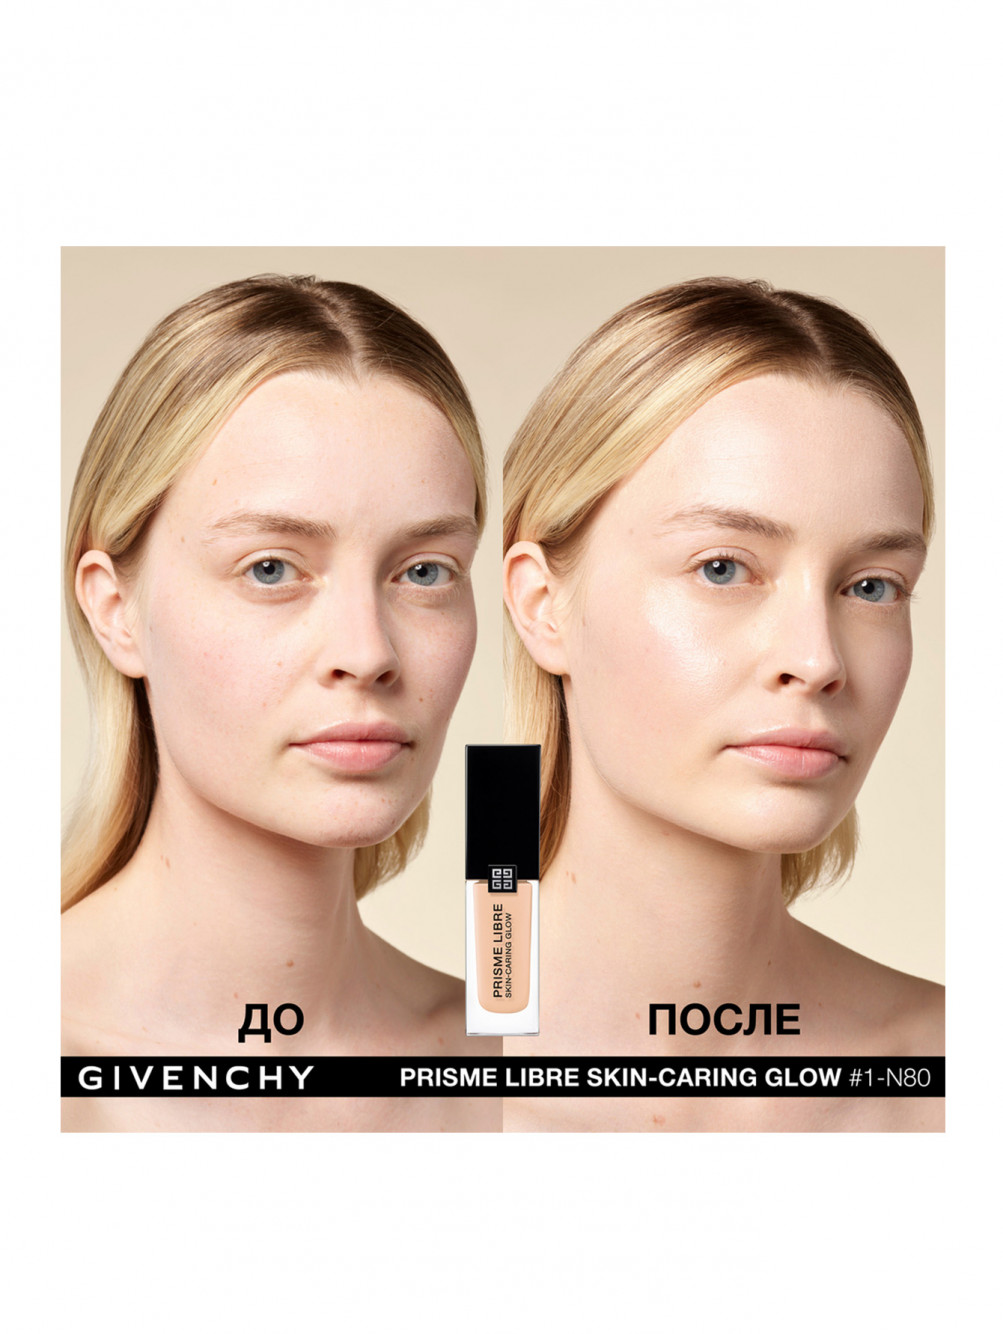 Ухаживающее тональное средство-флюид Prisme Libre Skin-Caring Glow, 1-N80 - Обтравка4